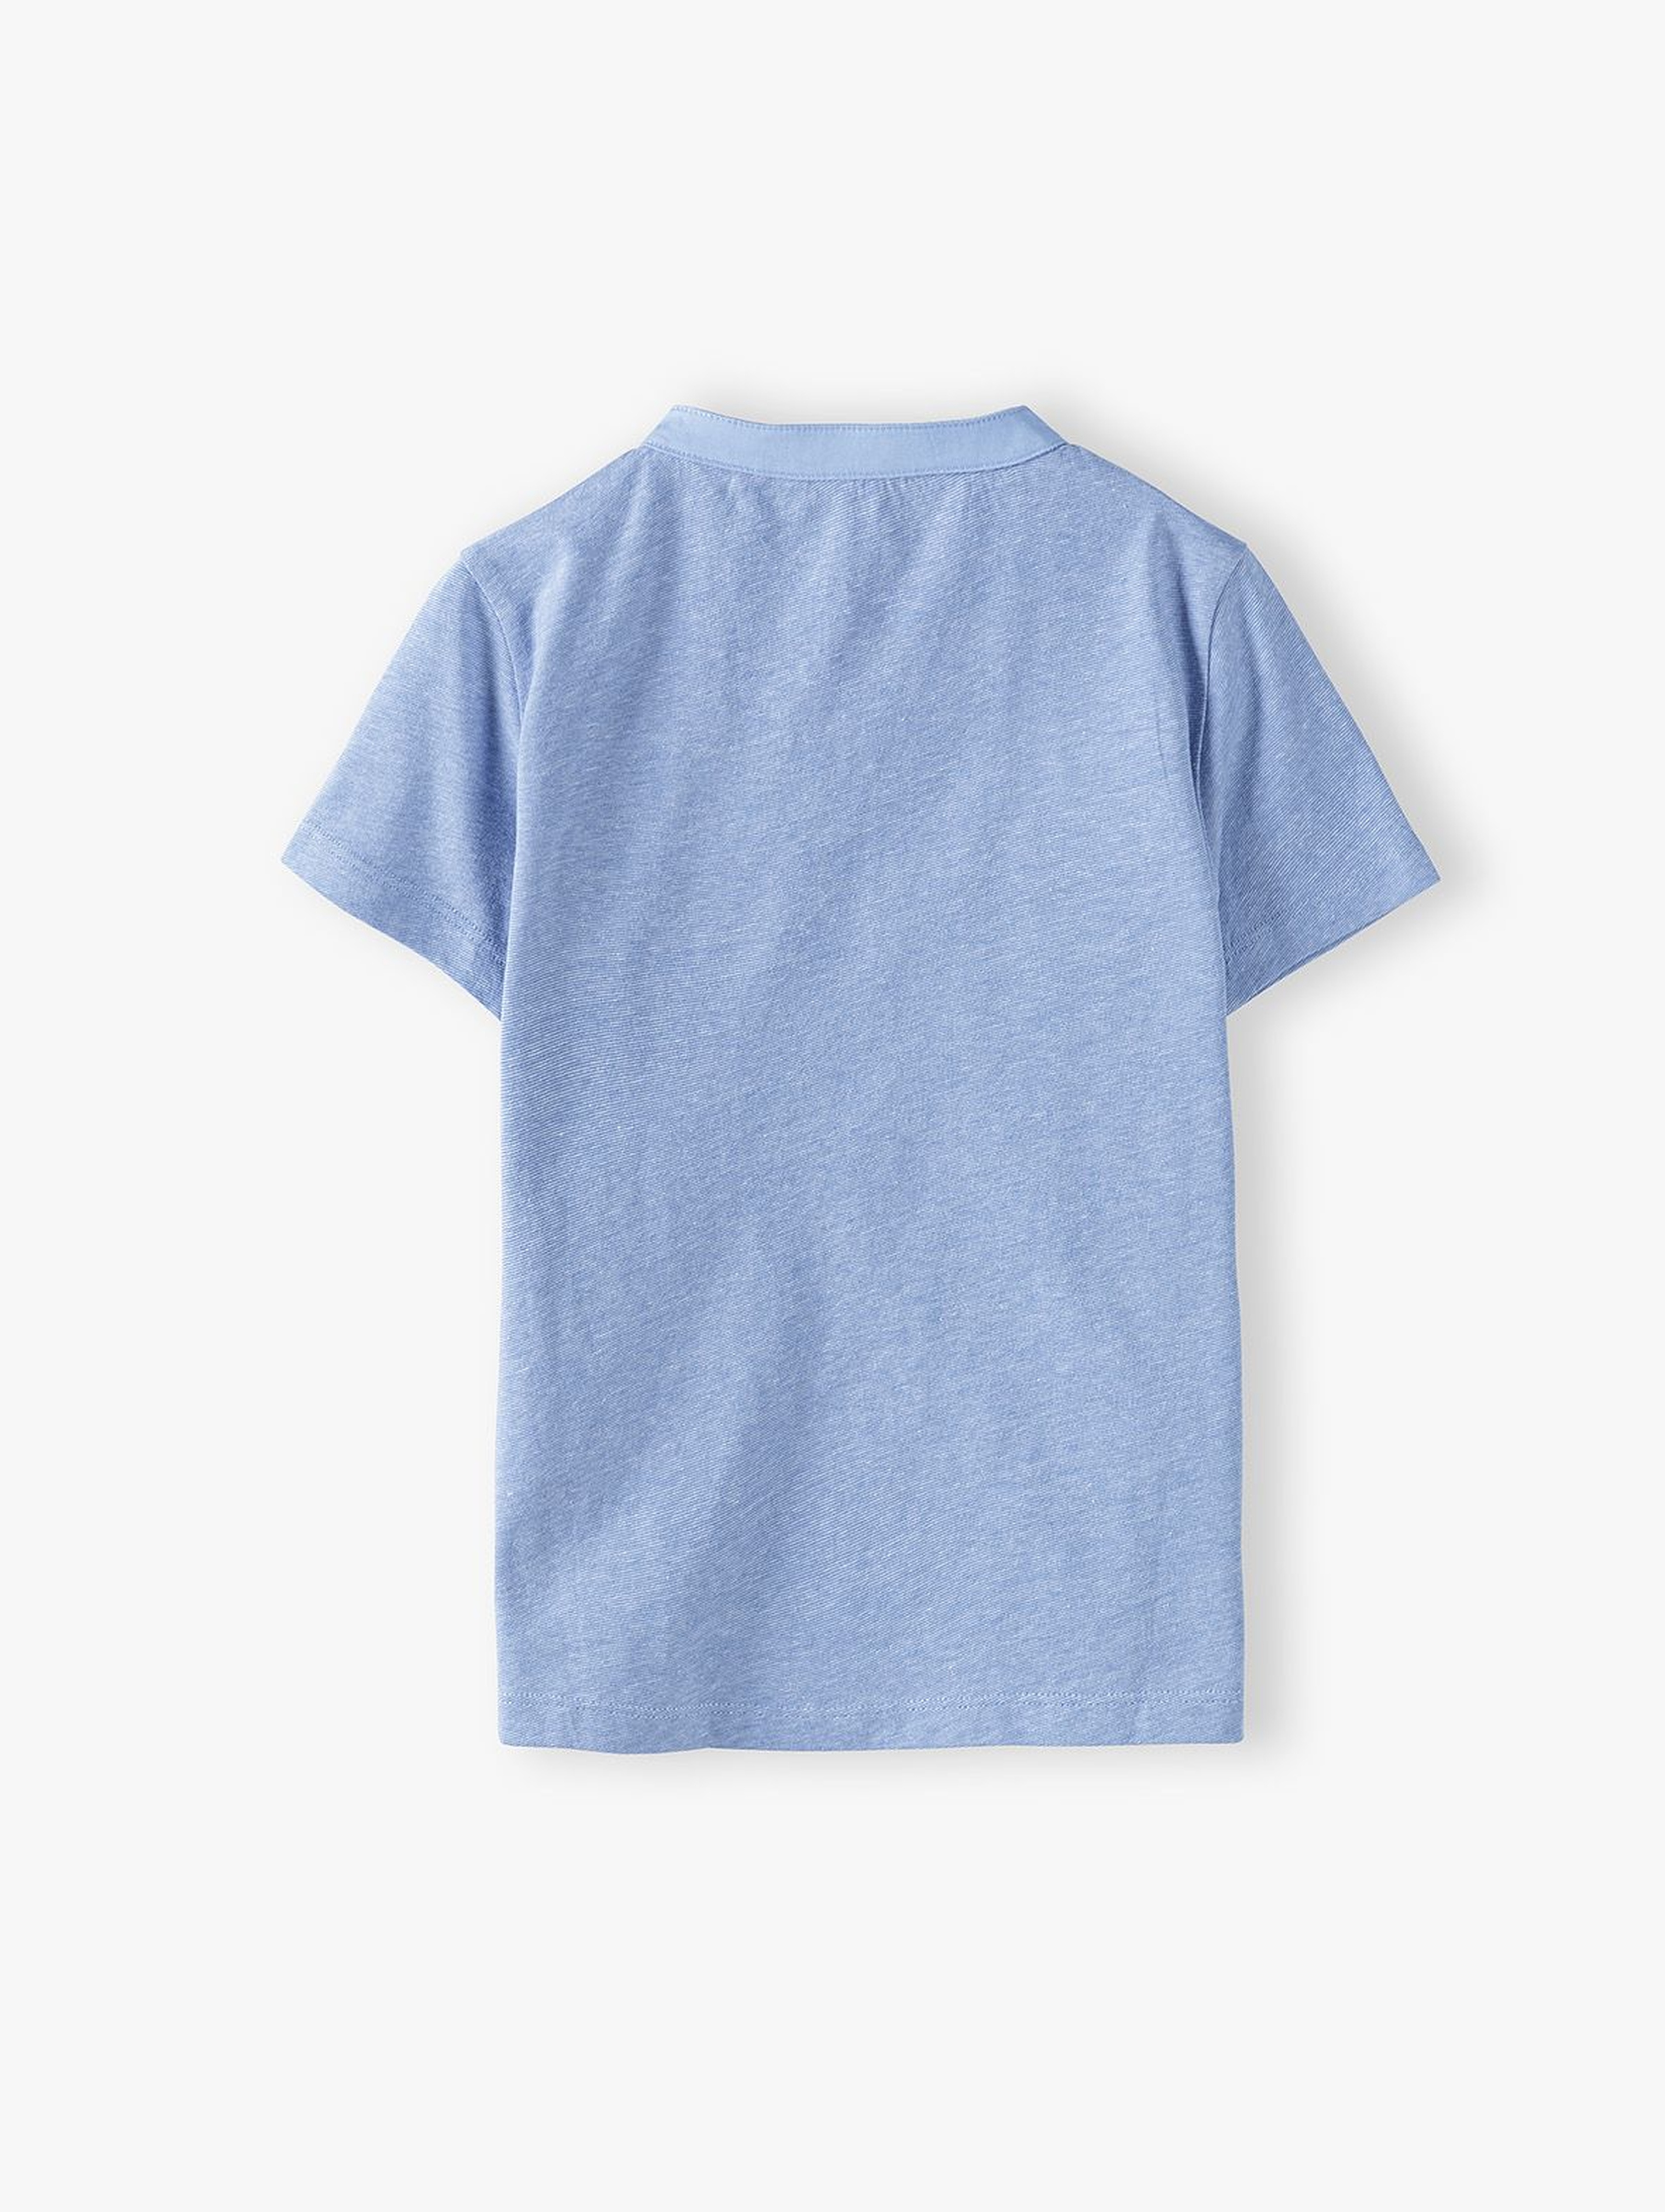 Bawełniany t-shirt chłopięcy niebieski